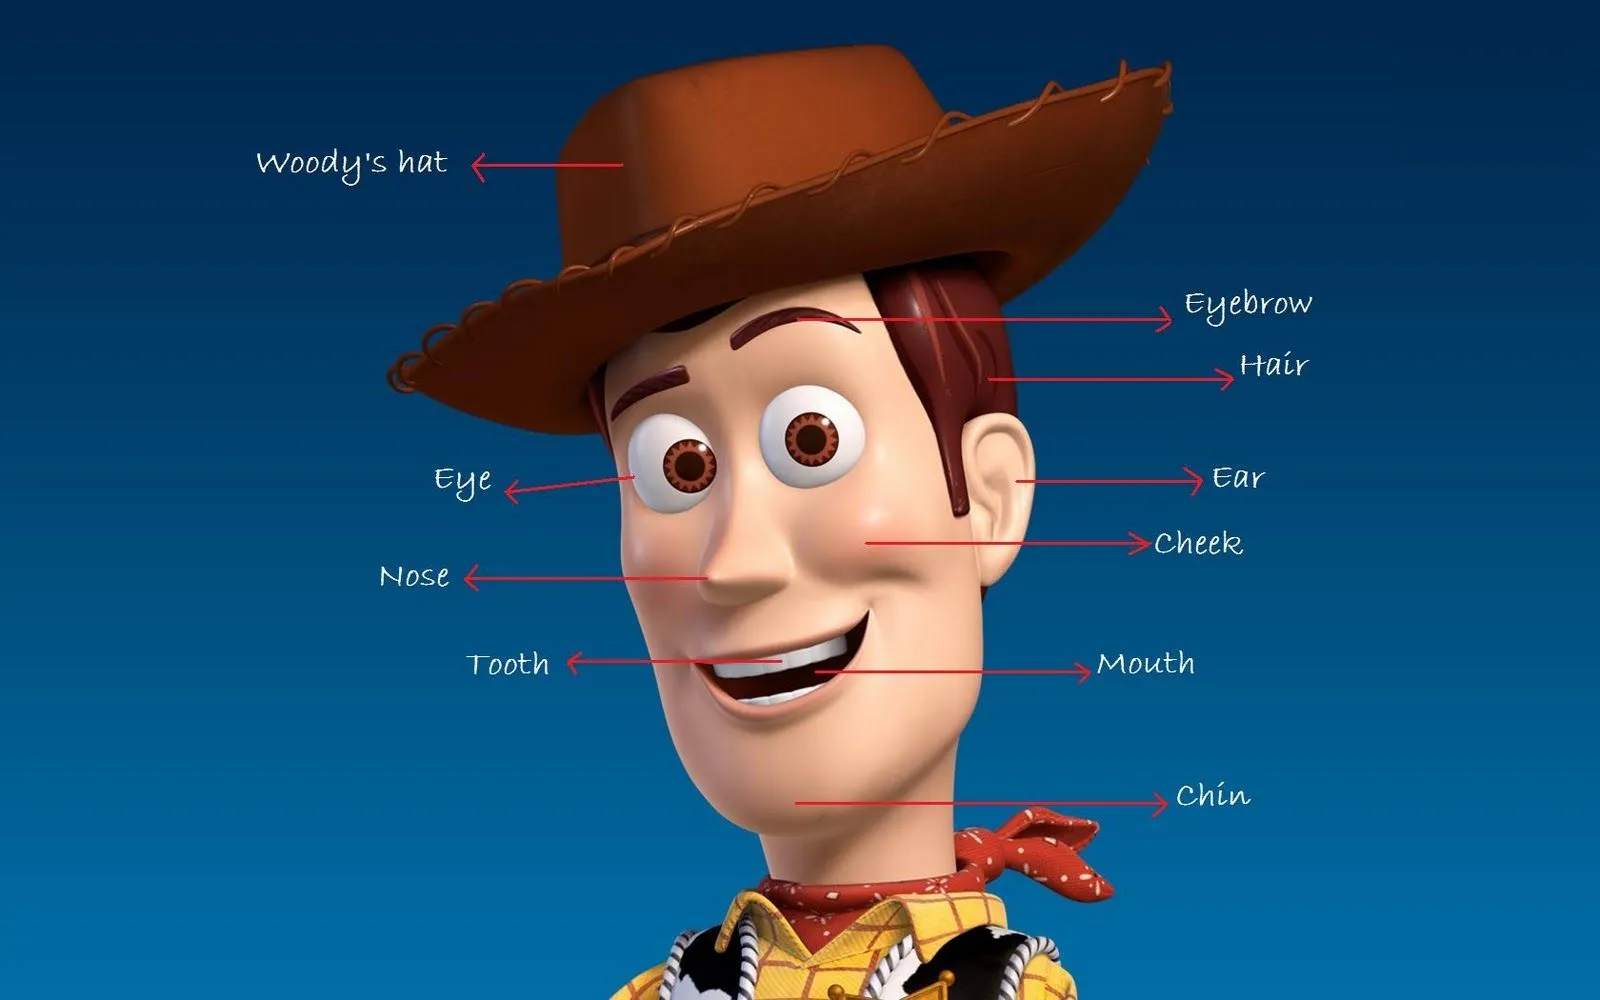  ... Woody, uno de los personajes de Toy Story, donde podemos ver las